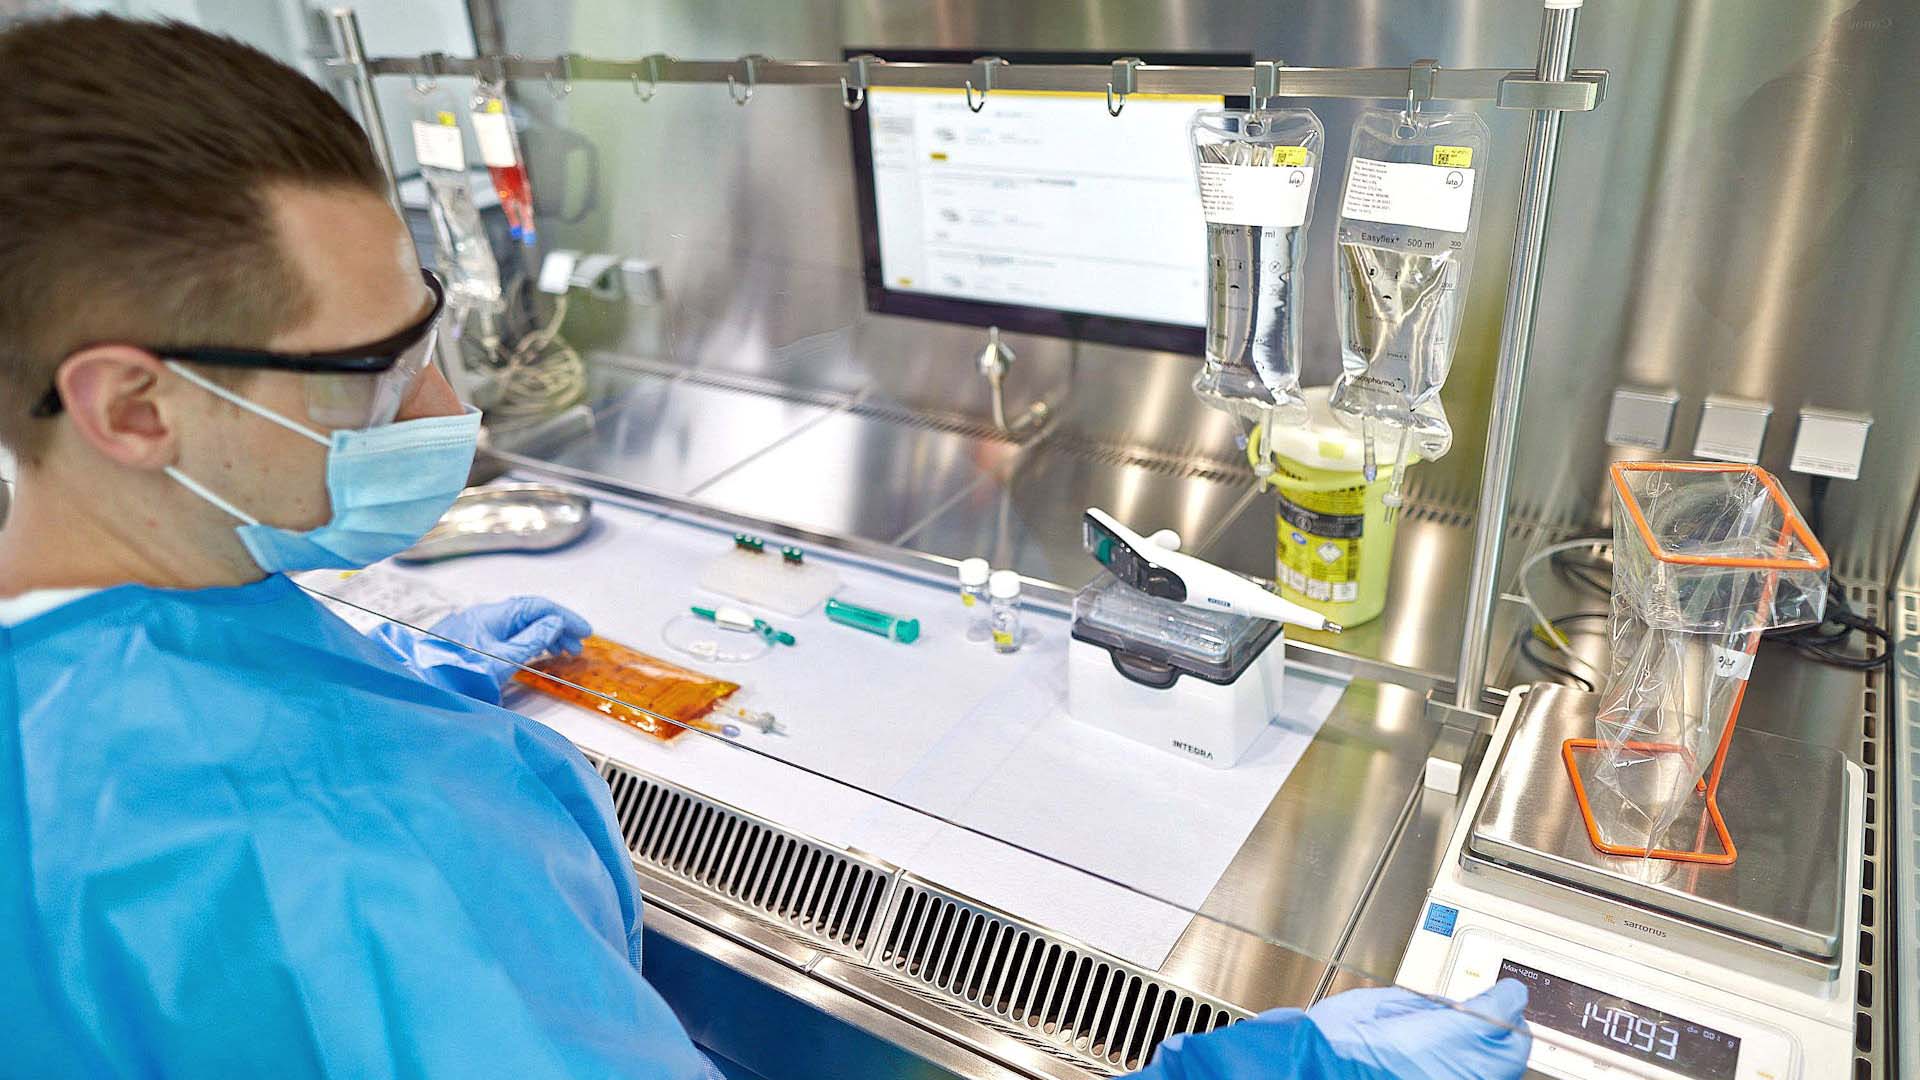 Ein Mann im blauen Kittel und mit Mundschutz sowie Schutzbrille im Labor